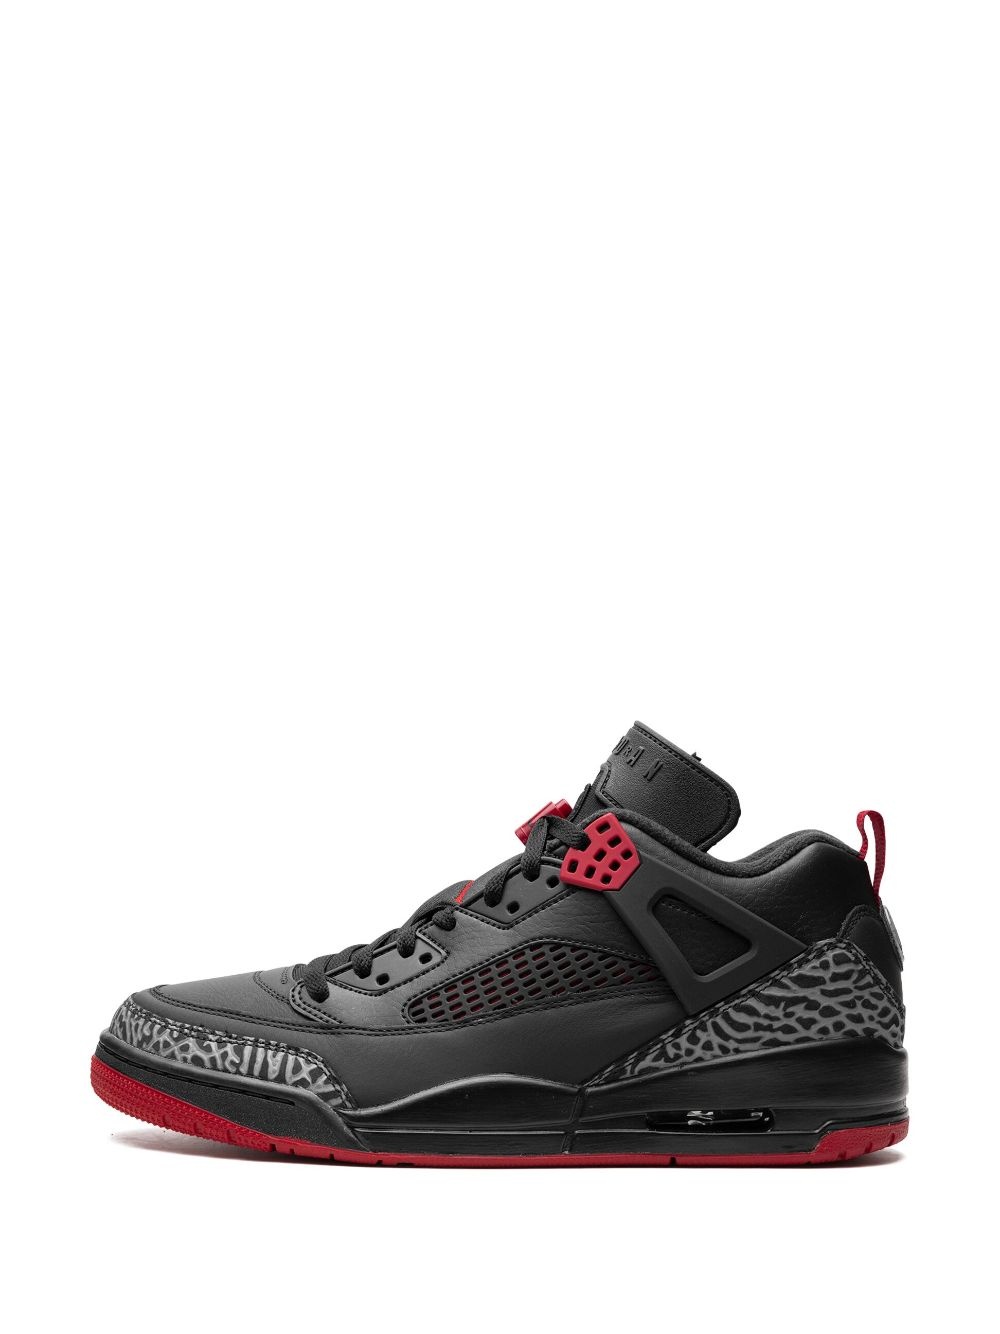 Air Jordan Spizike Low "Bred" sneakers - 6